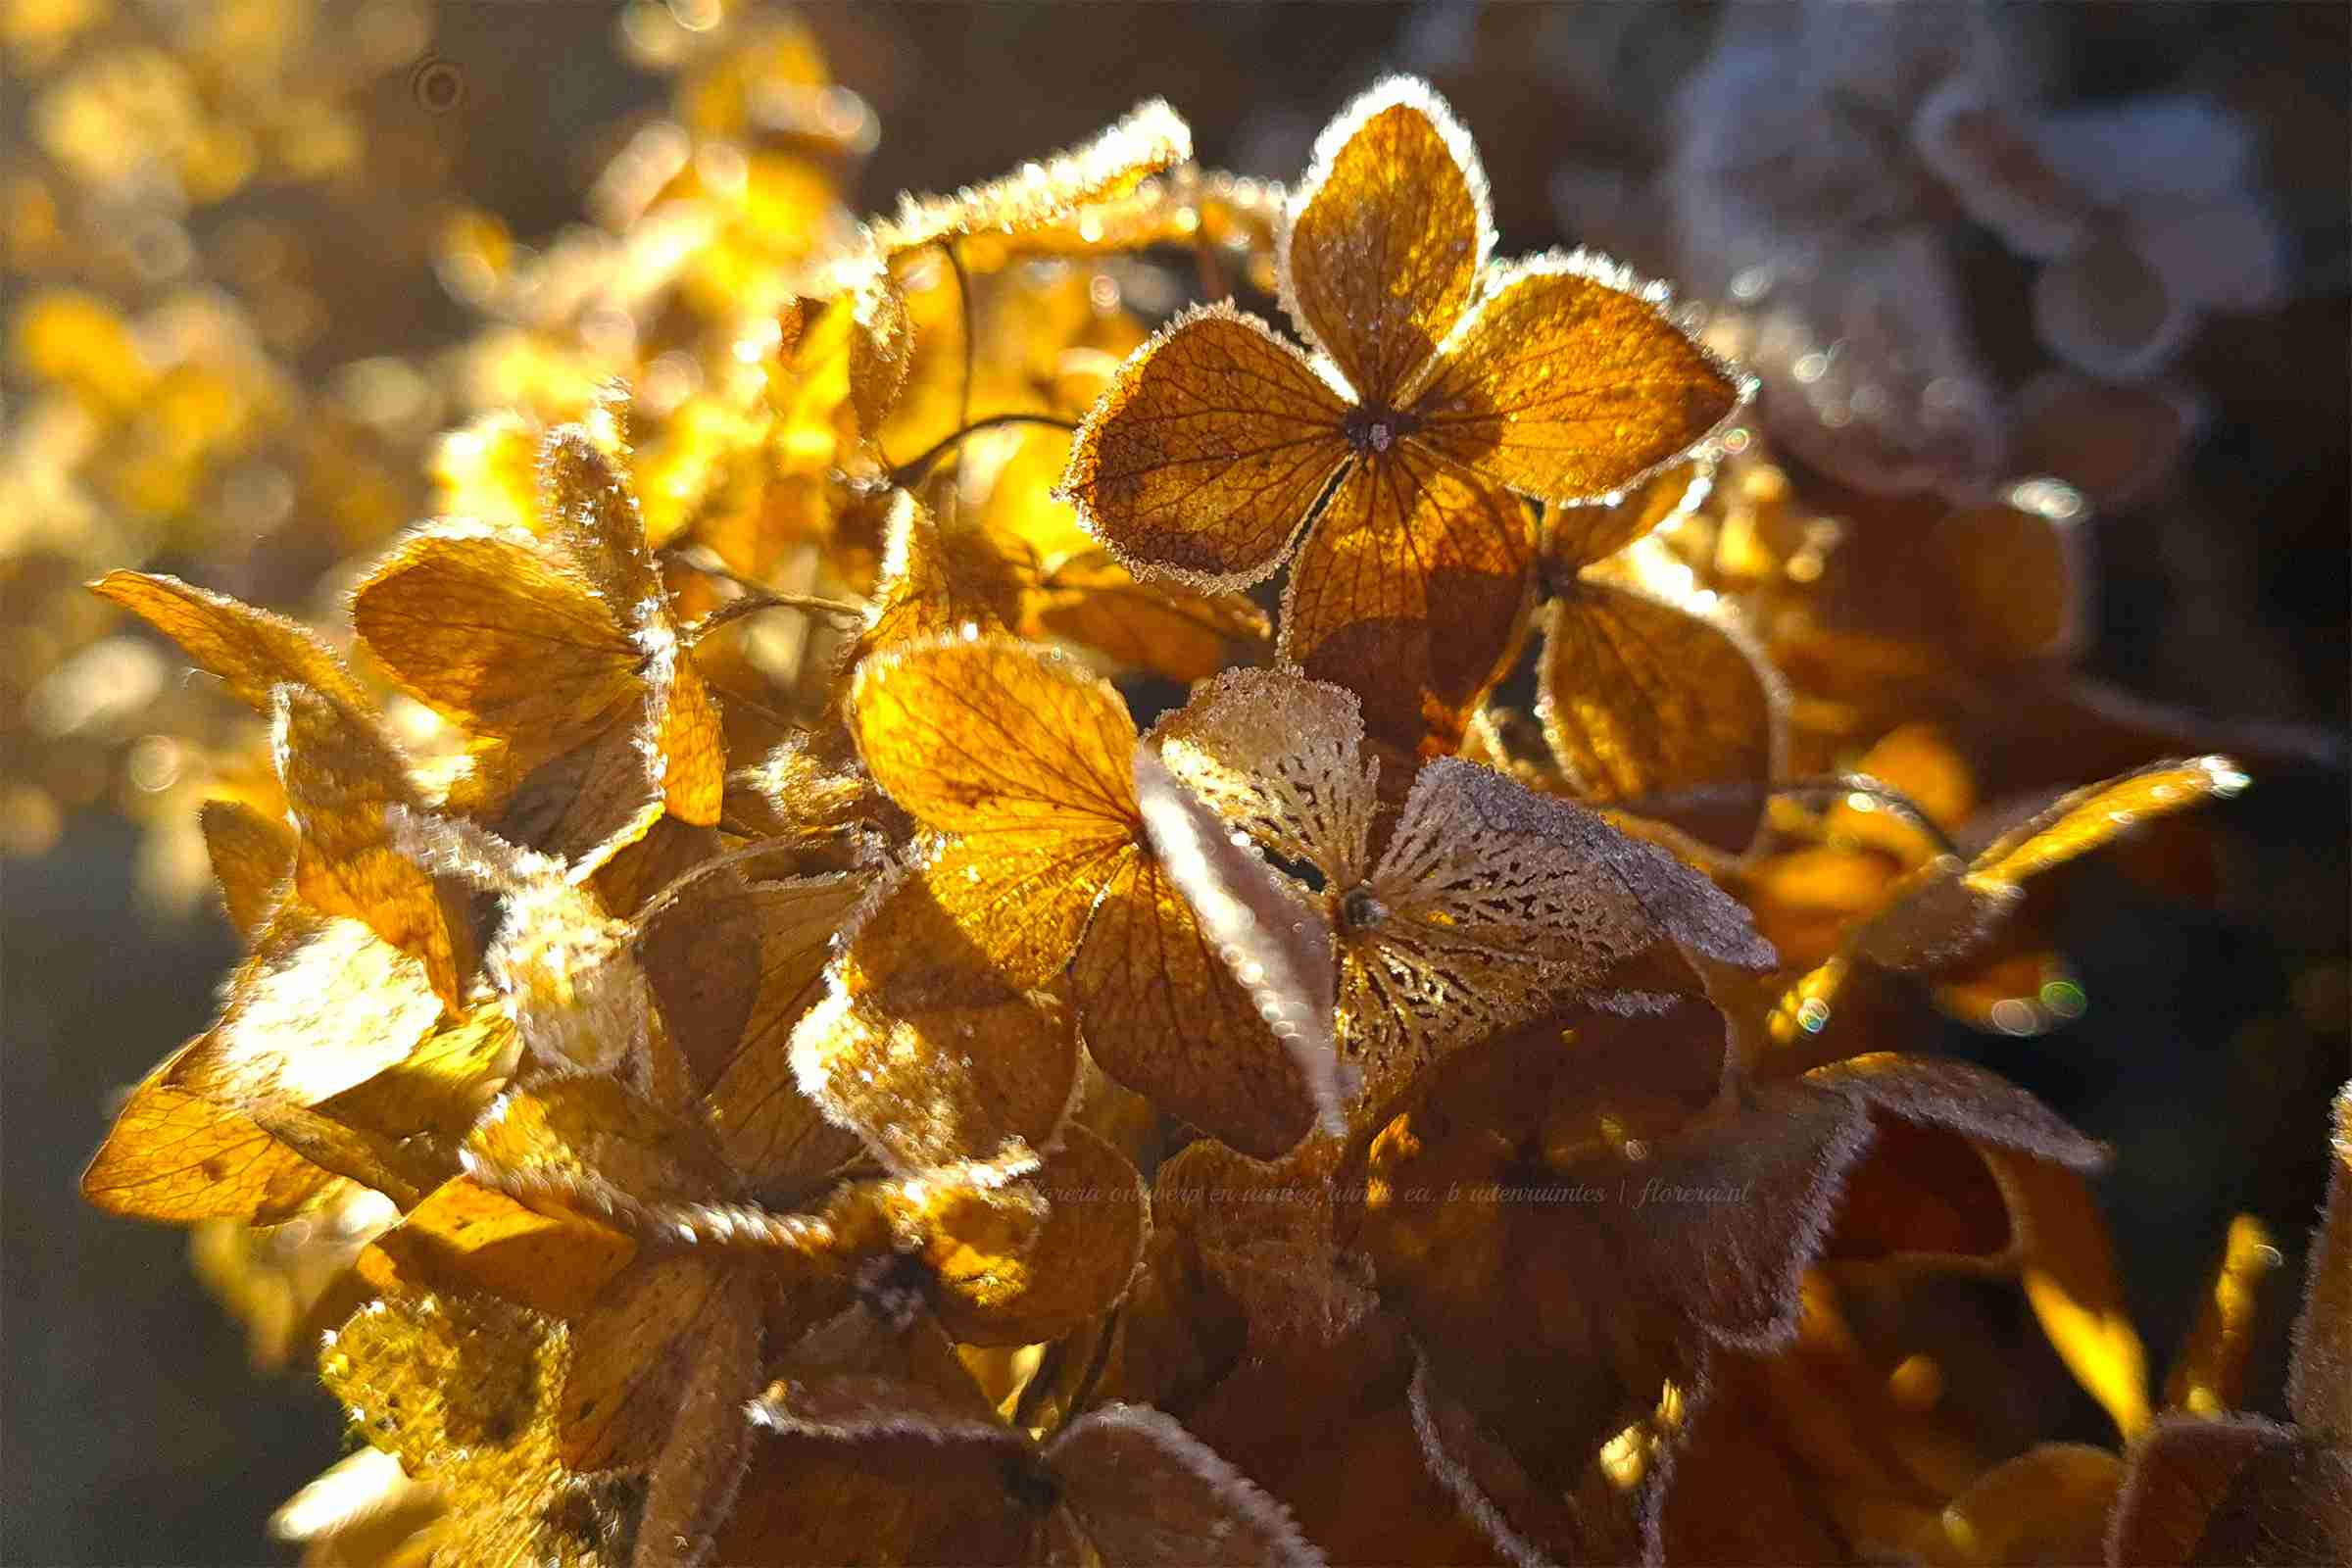 hortensia soorten zijn winterhard en prachtig in de winter tuin-florera.nl